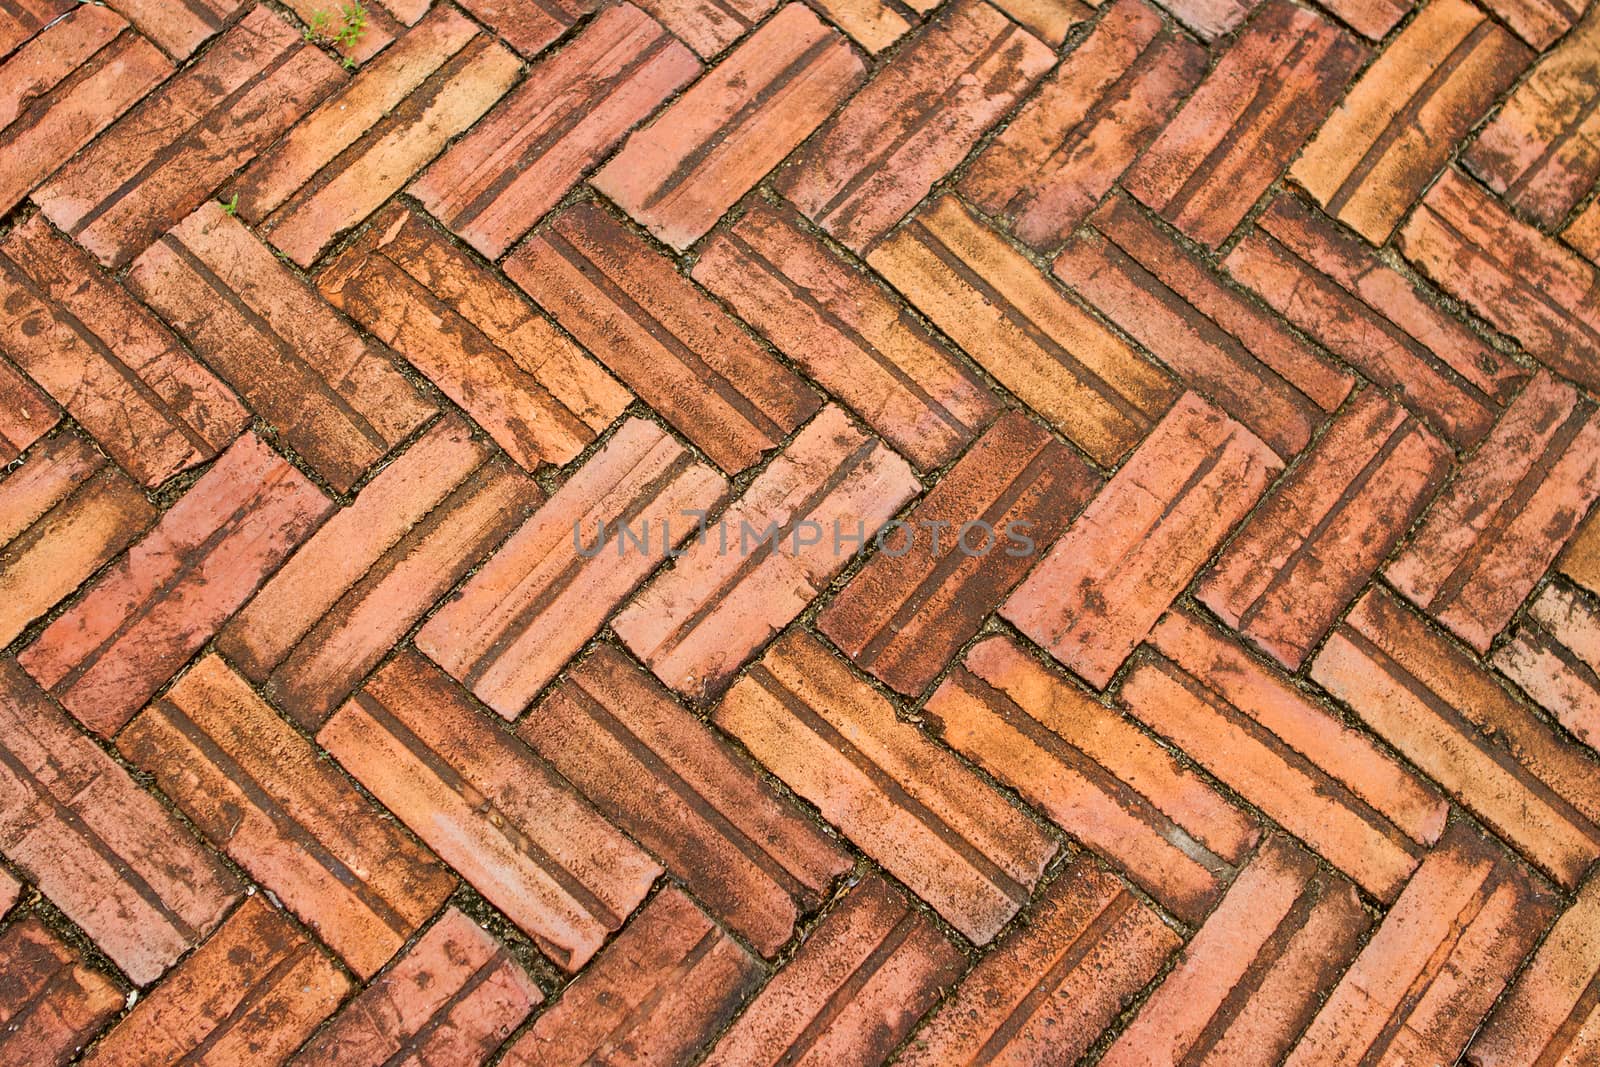 Brick brown brick pattern by TakerWalker